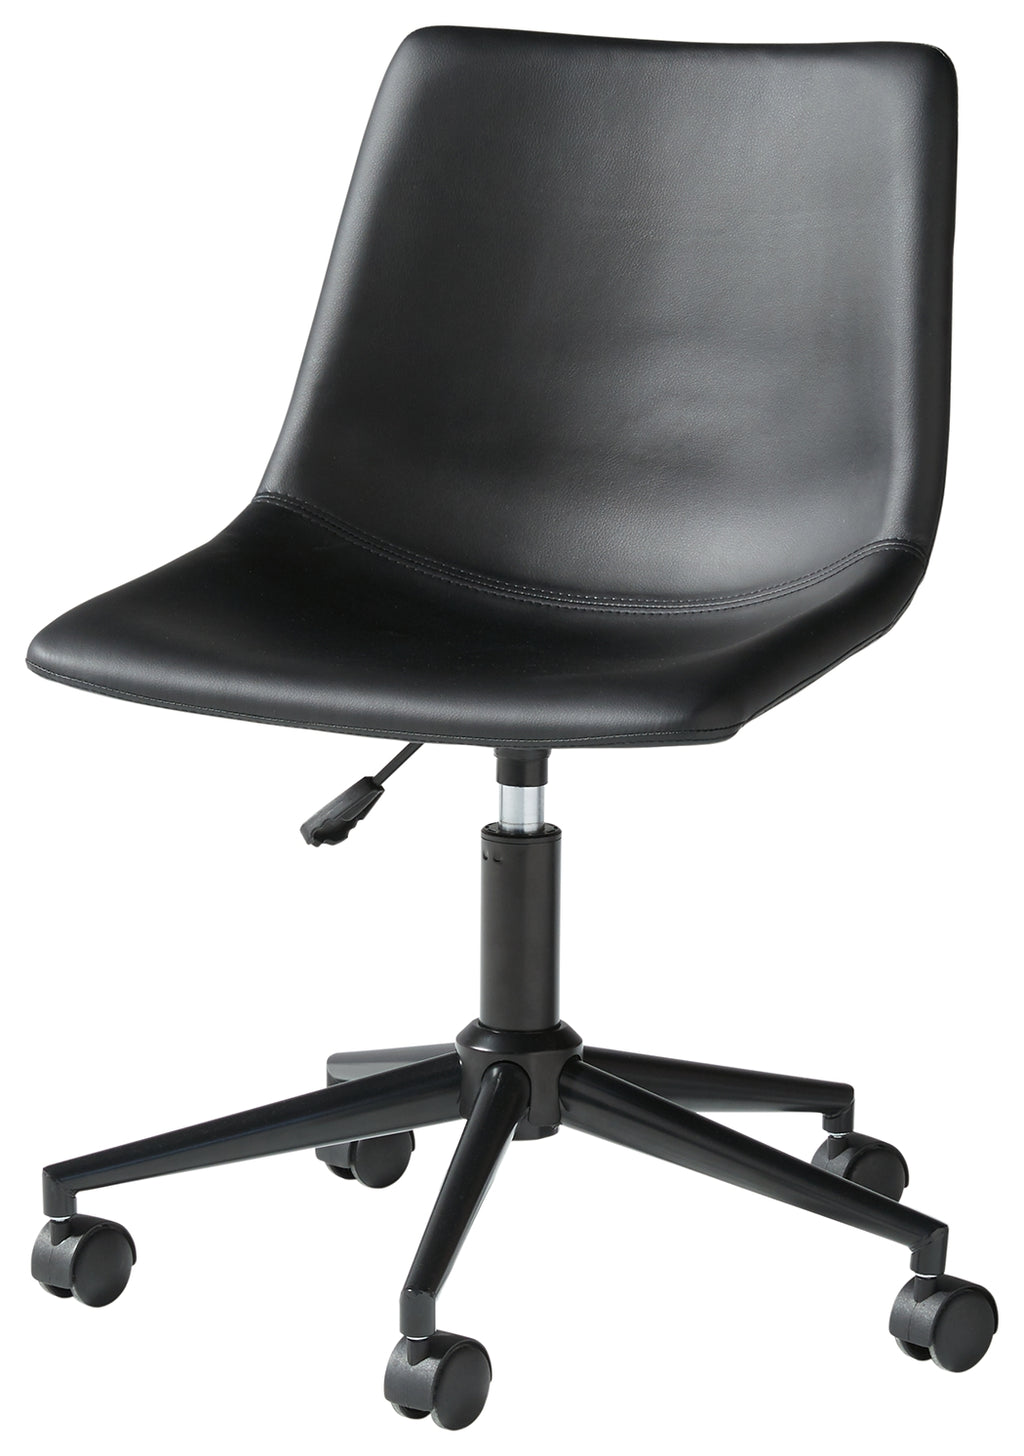 Office Chair Program H200-09 Black Home Office Swivel Desk Chair